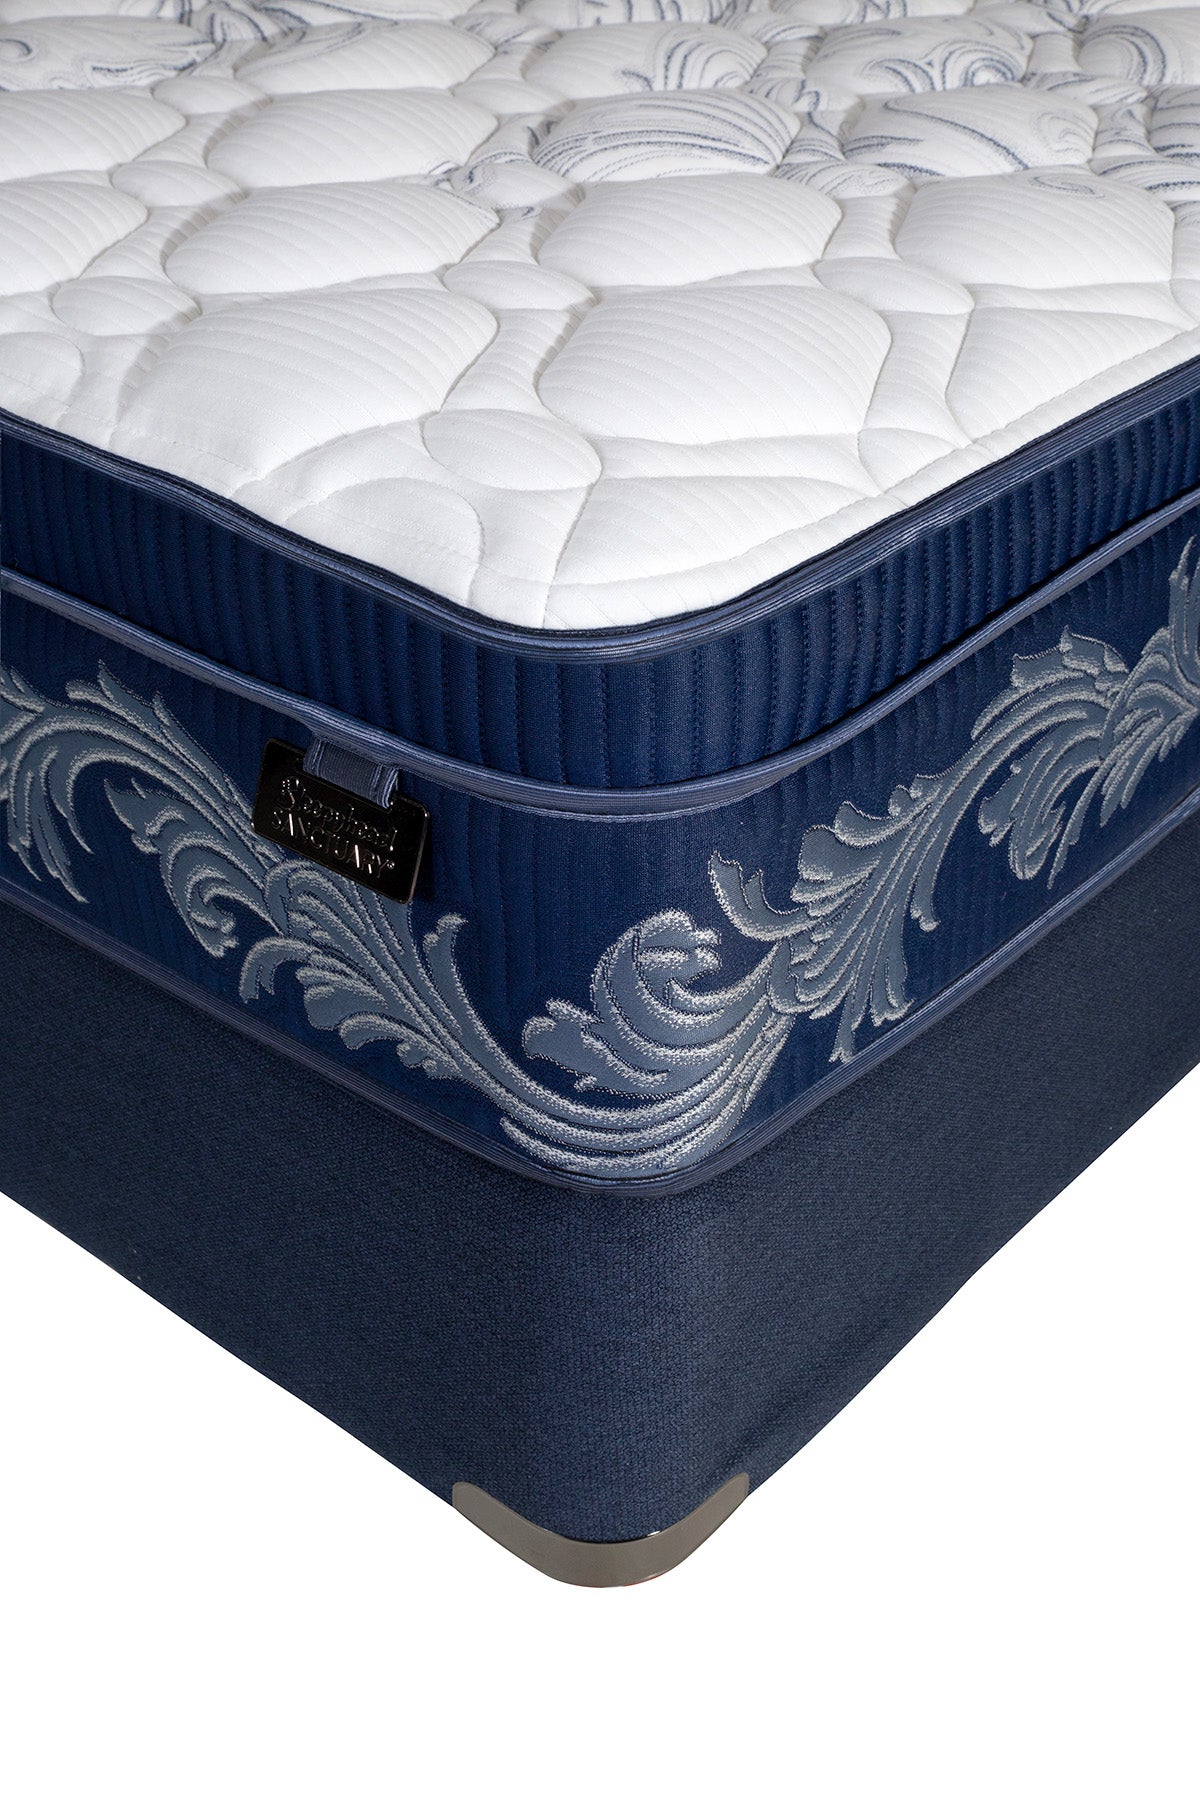 midnight5-super-king-mattress-2